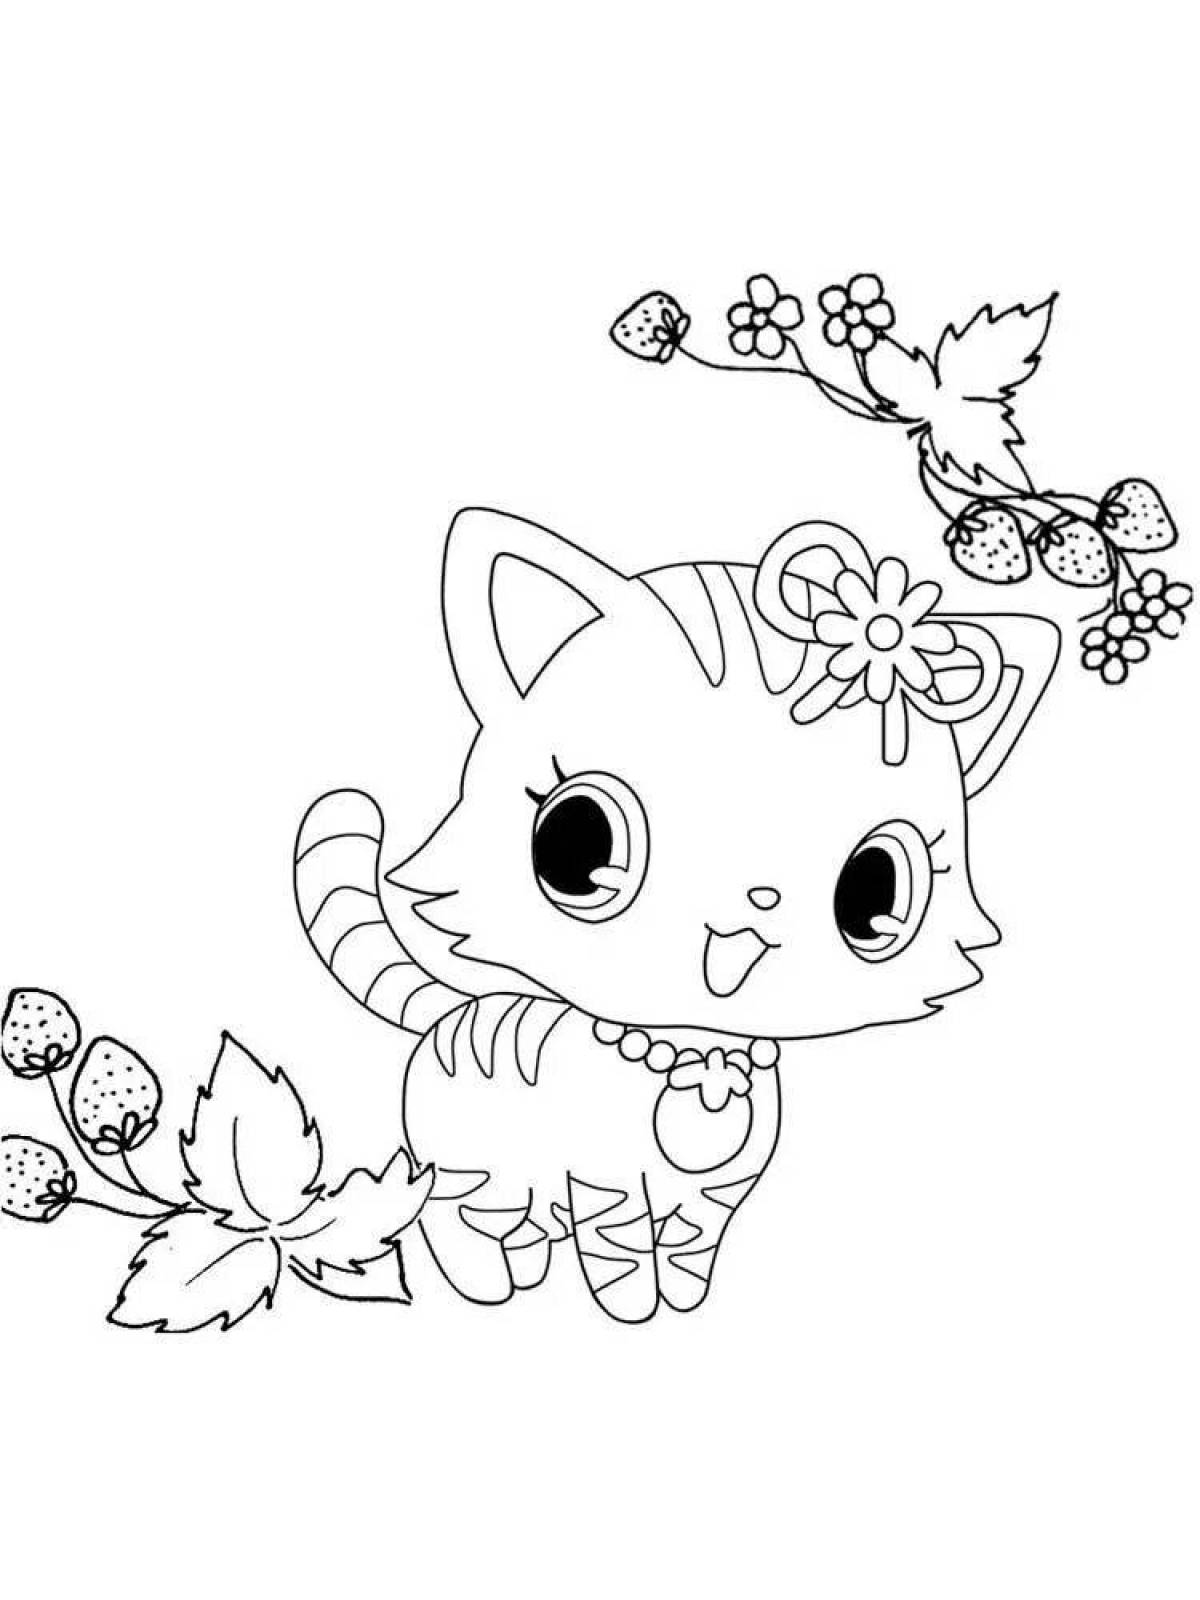 Joyful coloring cute kittens